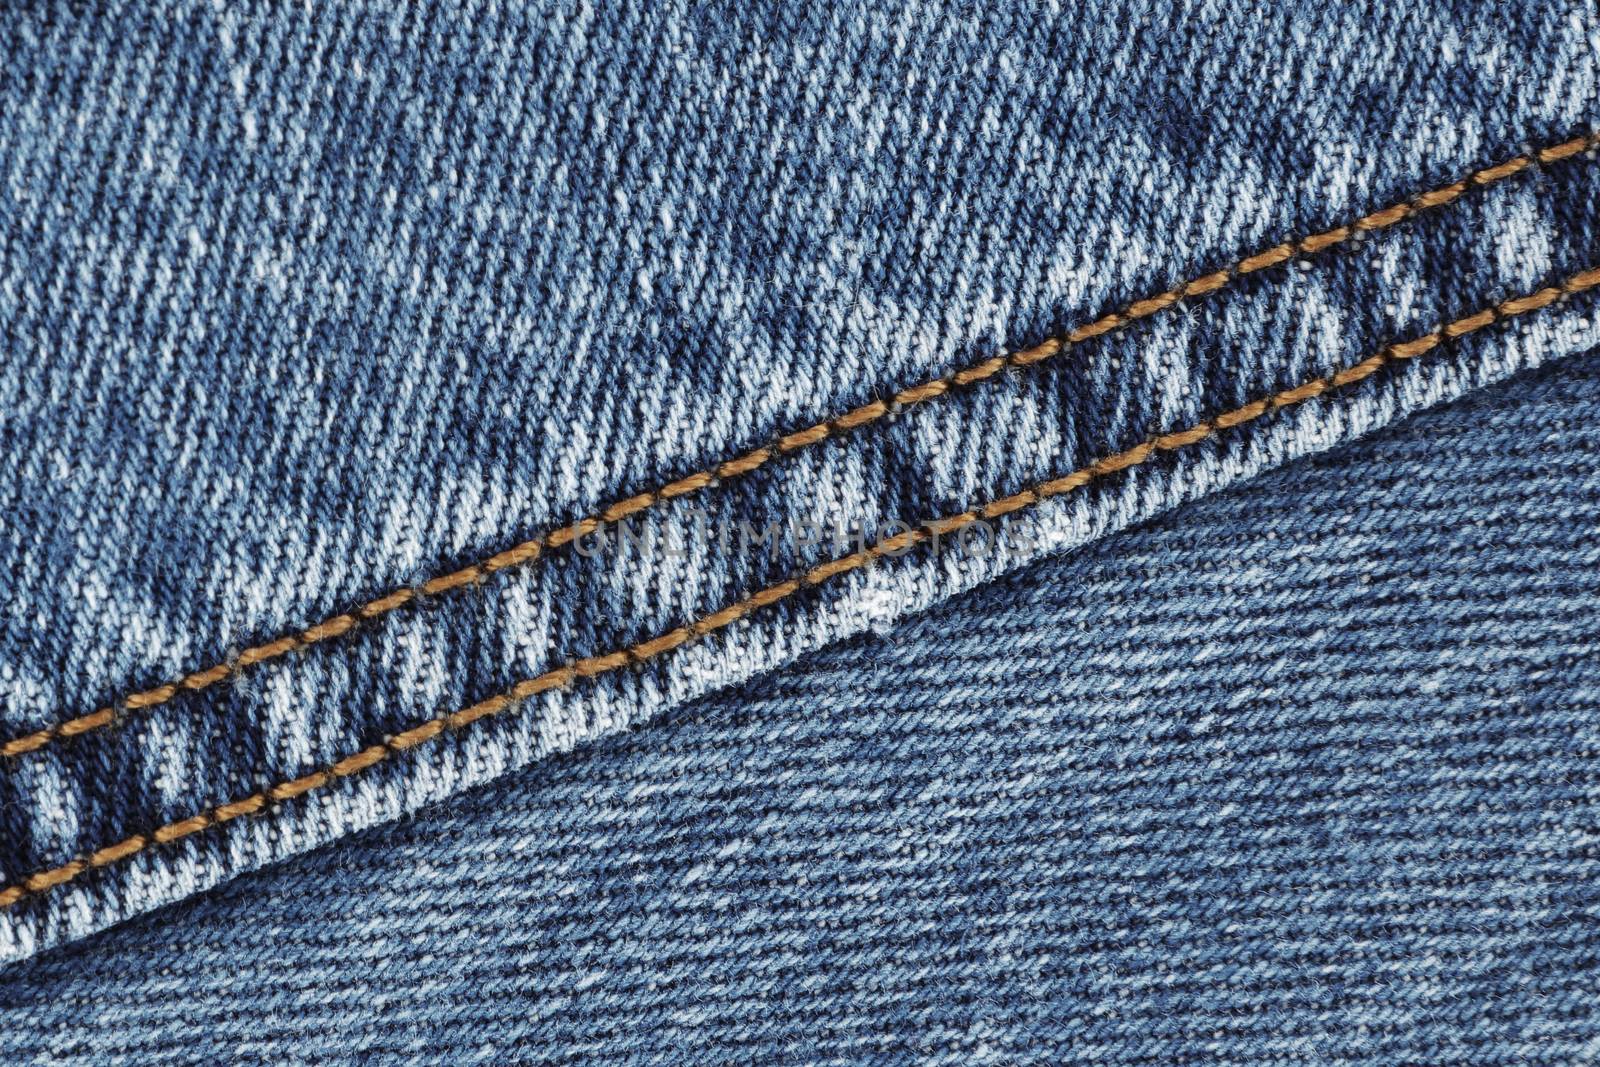 A denim jeans seam double stitch close up blue